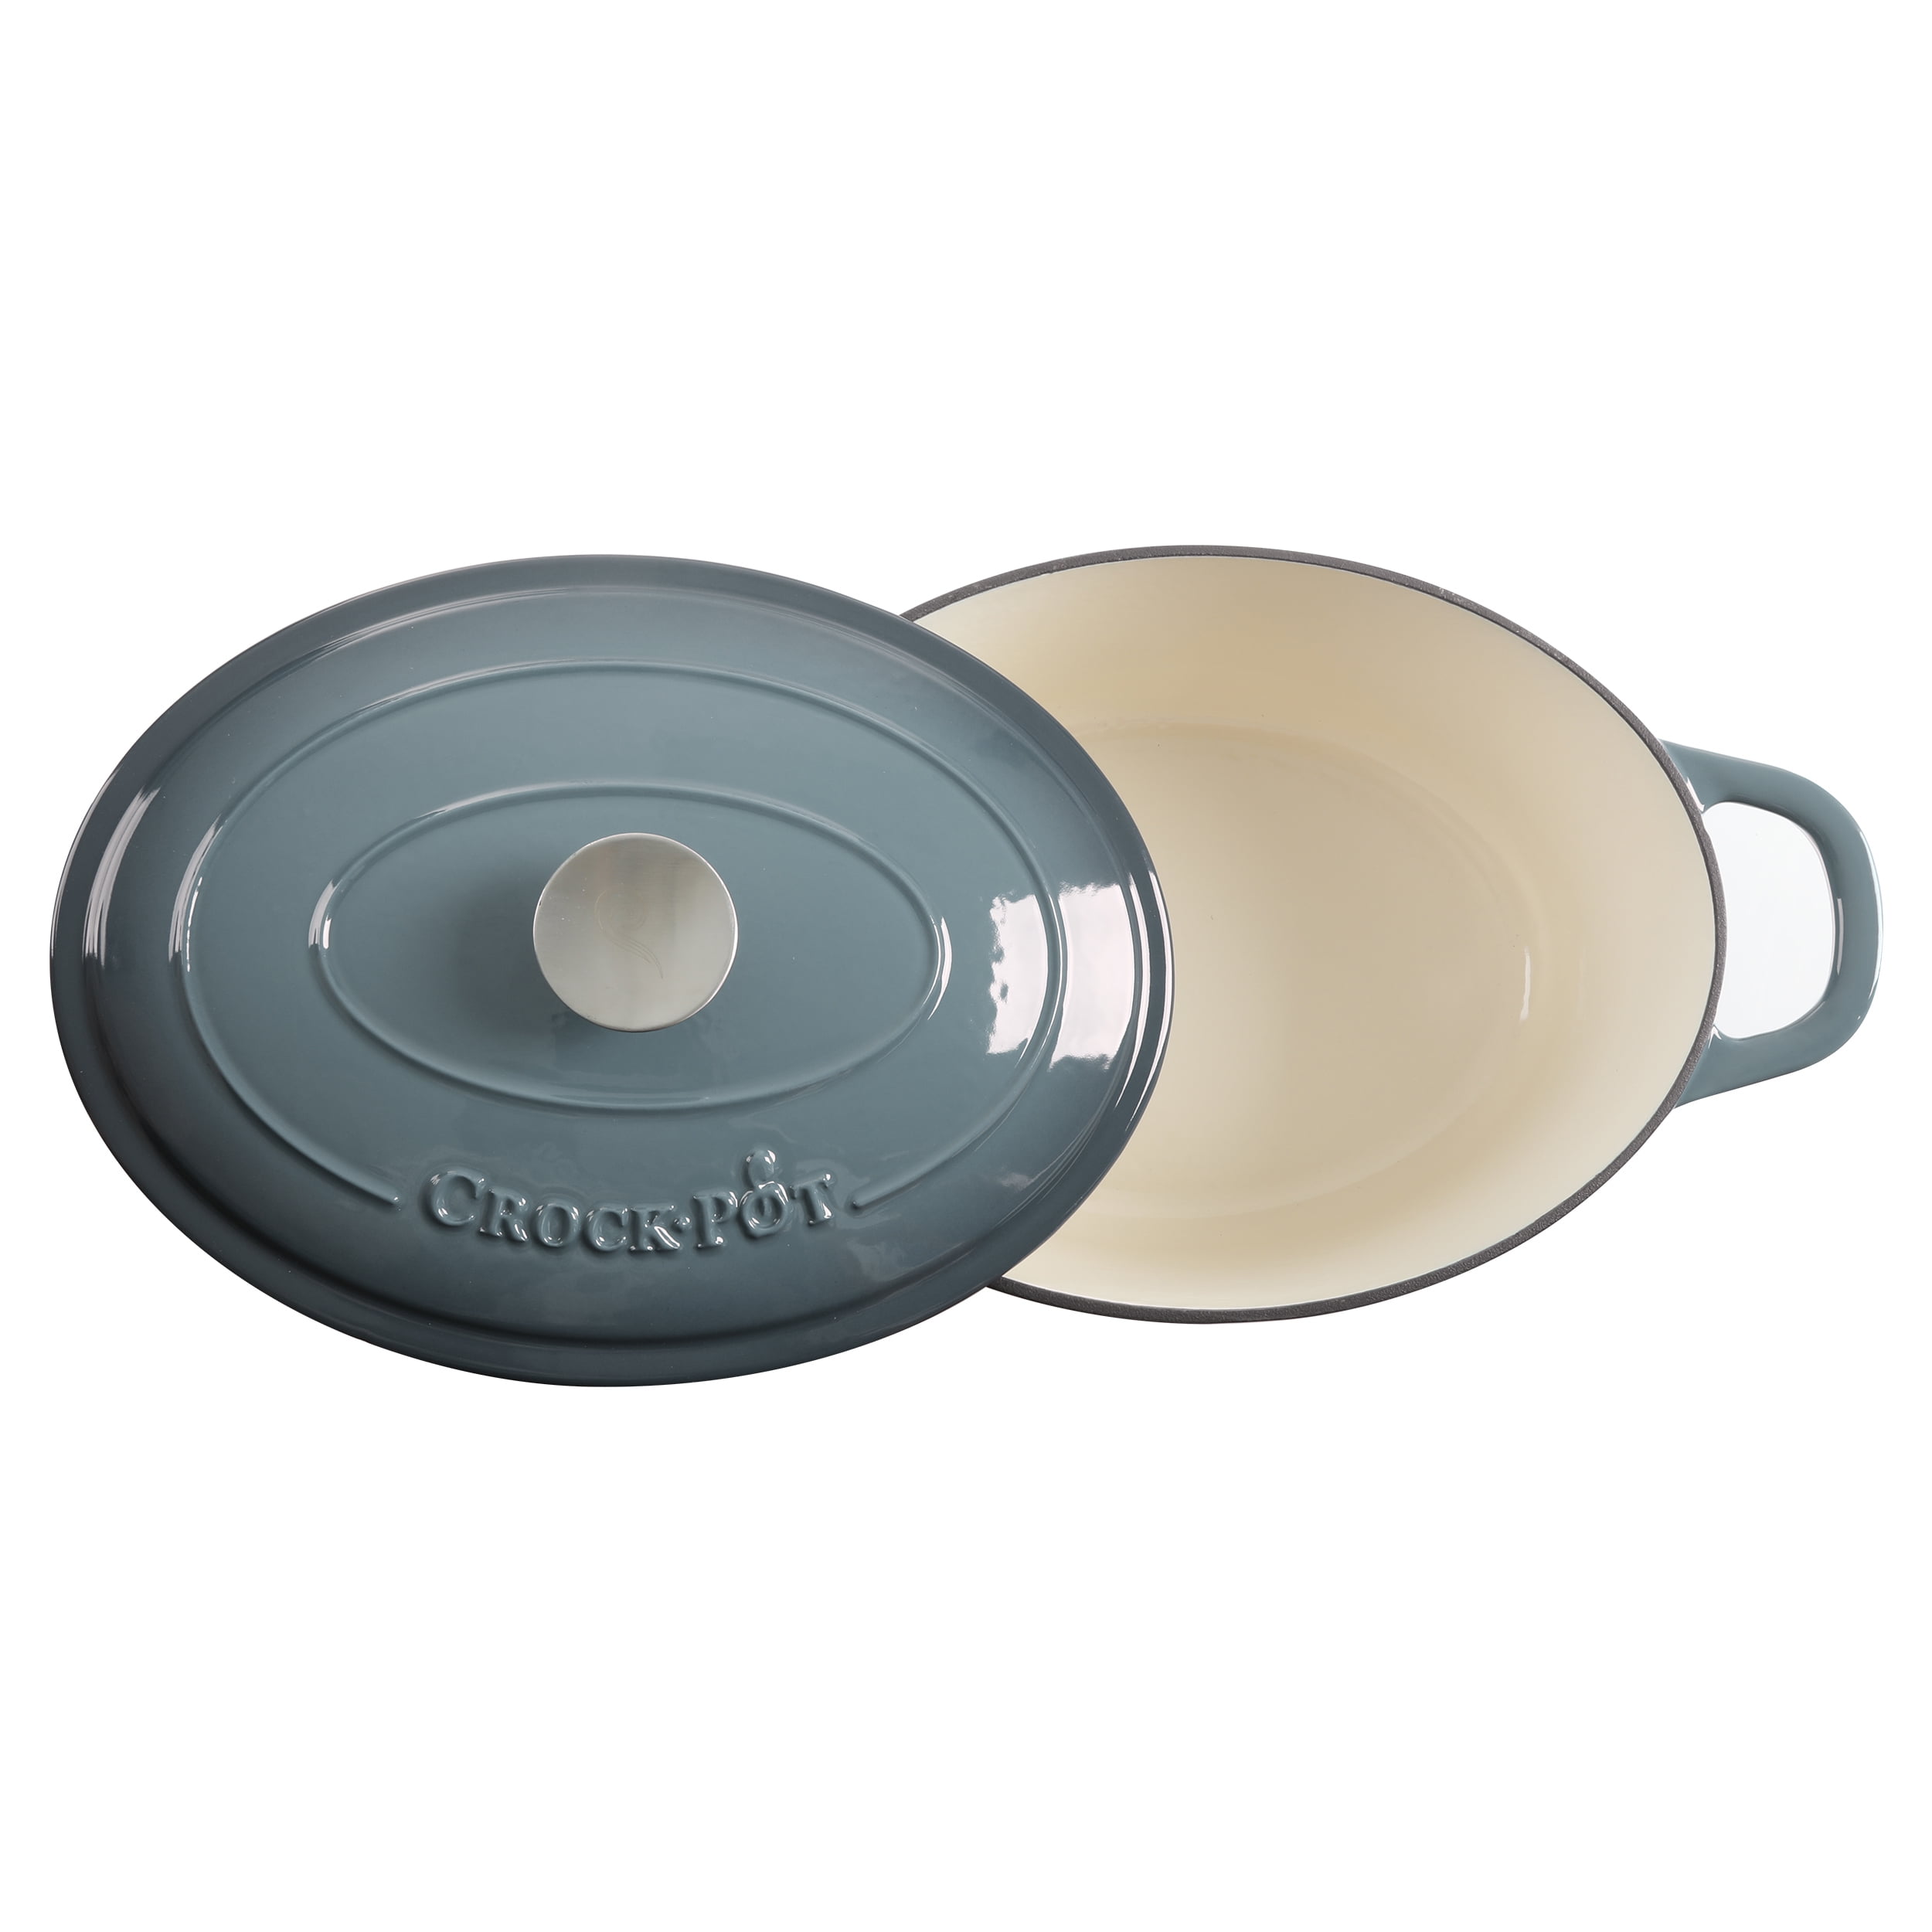 Crock Pot Artisan 7-Quart Oval Dutch Oven - Gray, 7 qt - Kroger